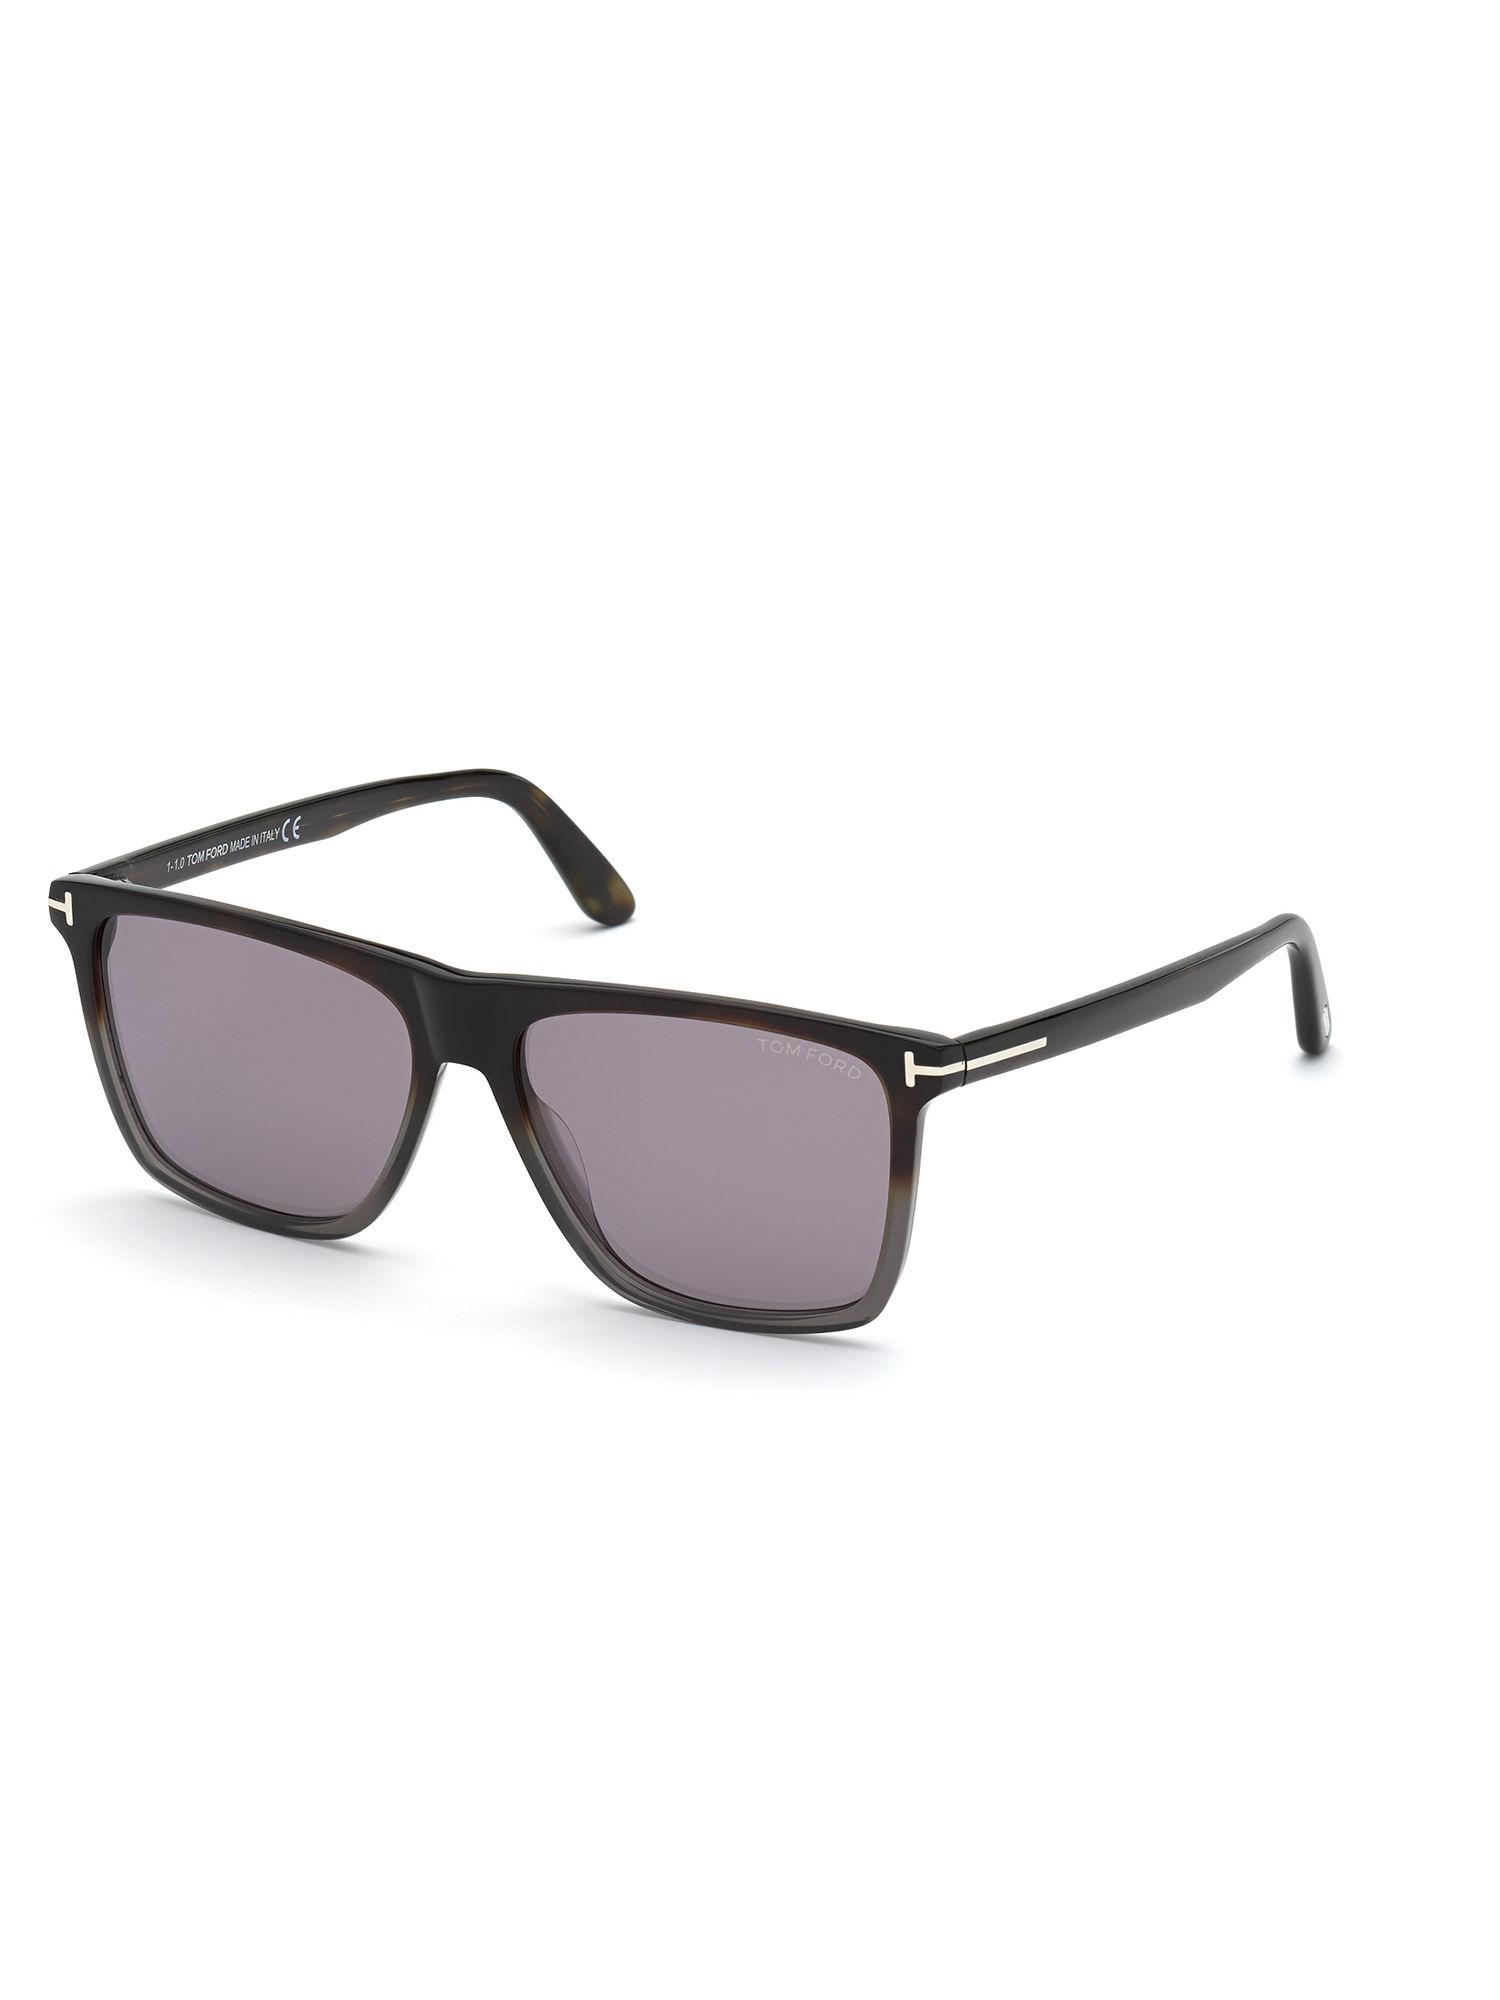 Black Plastic Sunglasses FT0832 59 55C